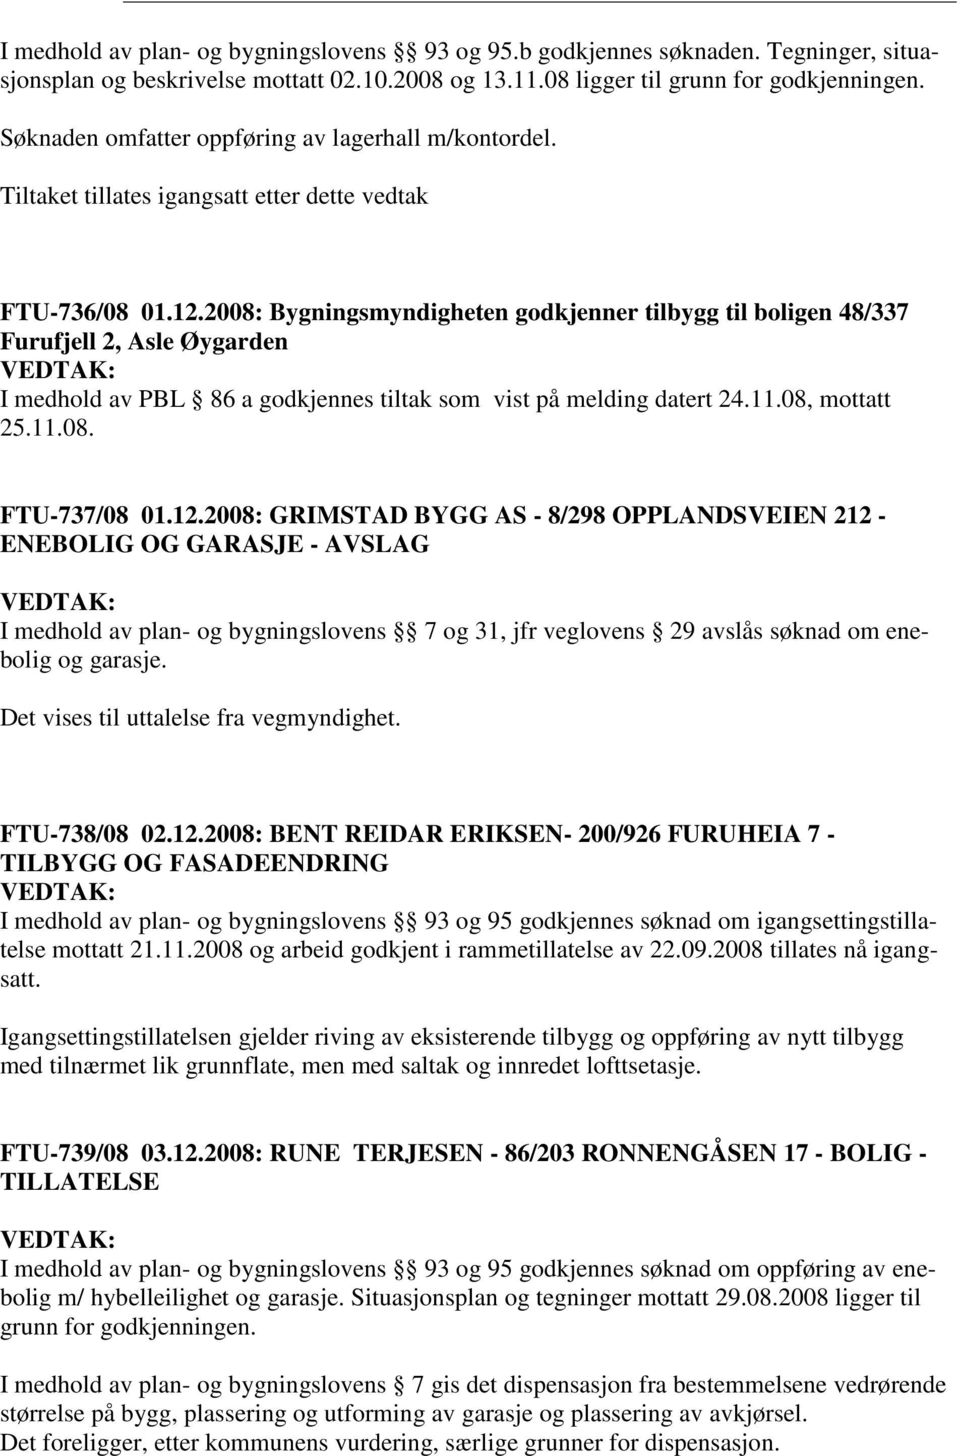 2008: Bygningsmyndigheten godkjenner tilbygg til boligen 48/337 Furufjell 2, Asle Øygarden I medhold av PBL 86 a godkjennes tiltak som vist på melding datert 24.11.08, mottatt 25.11.08. FTU-737/08 01.